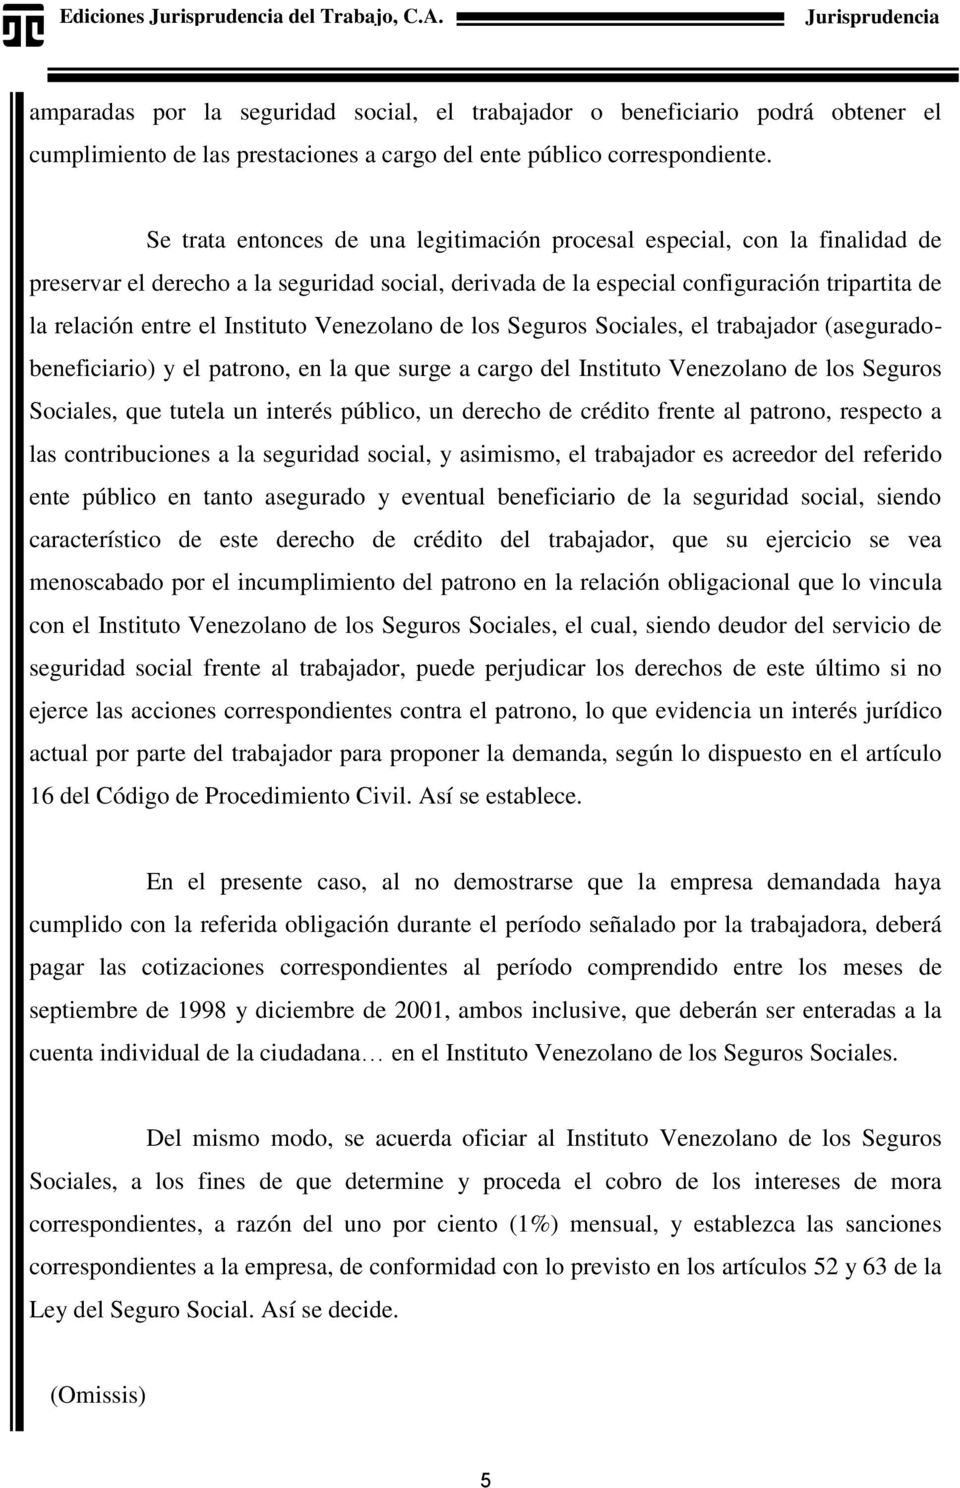 Instituto Venezolano de los Seguros Sociales, el trabajador (aseguradobeneficiario) y el patrono, en la que surge a cargo del Instituto Venezolano de los Seguros Sociales, que tutela un interés